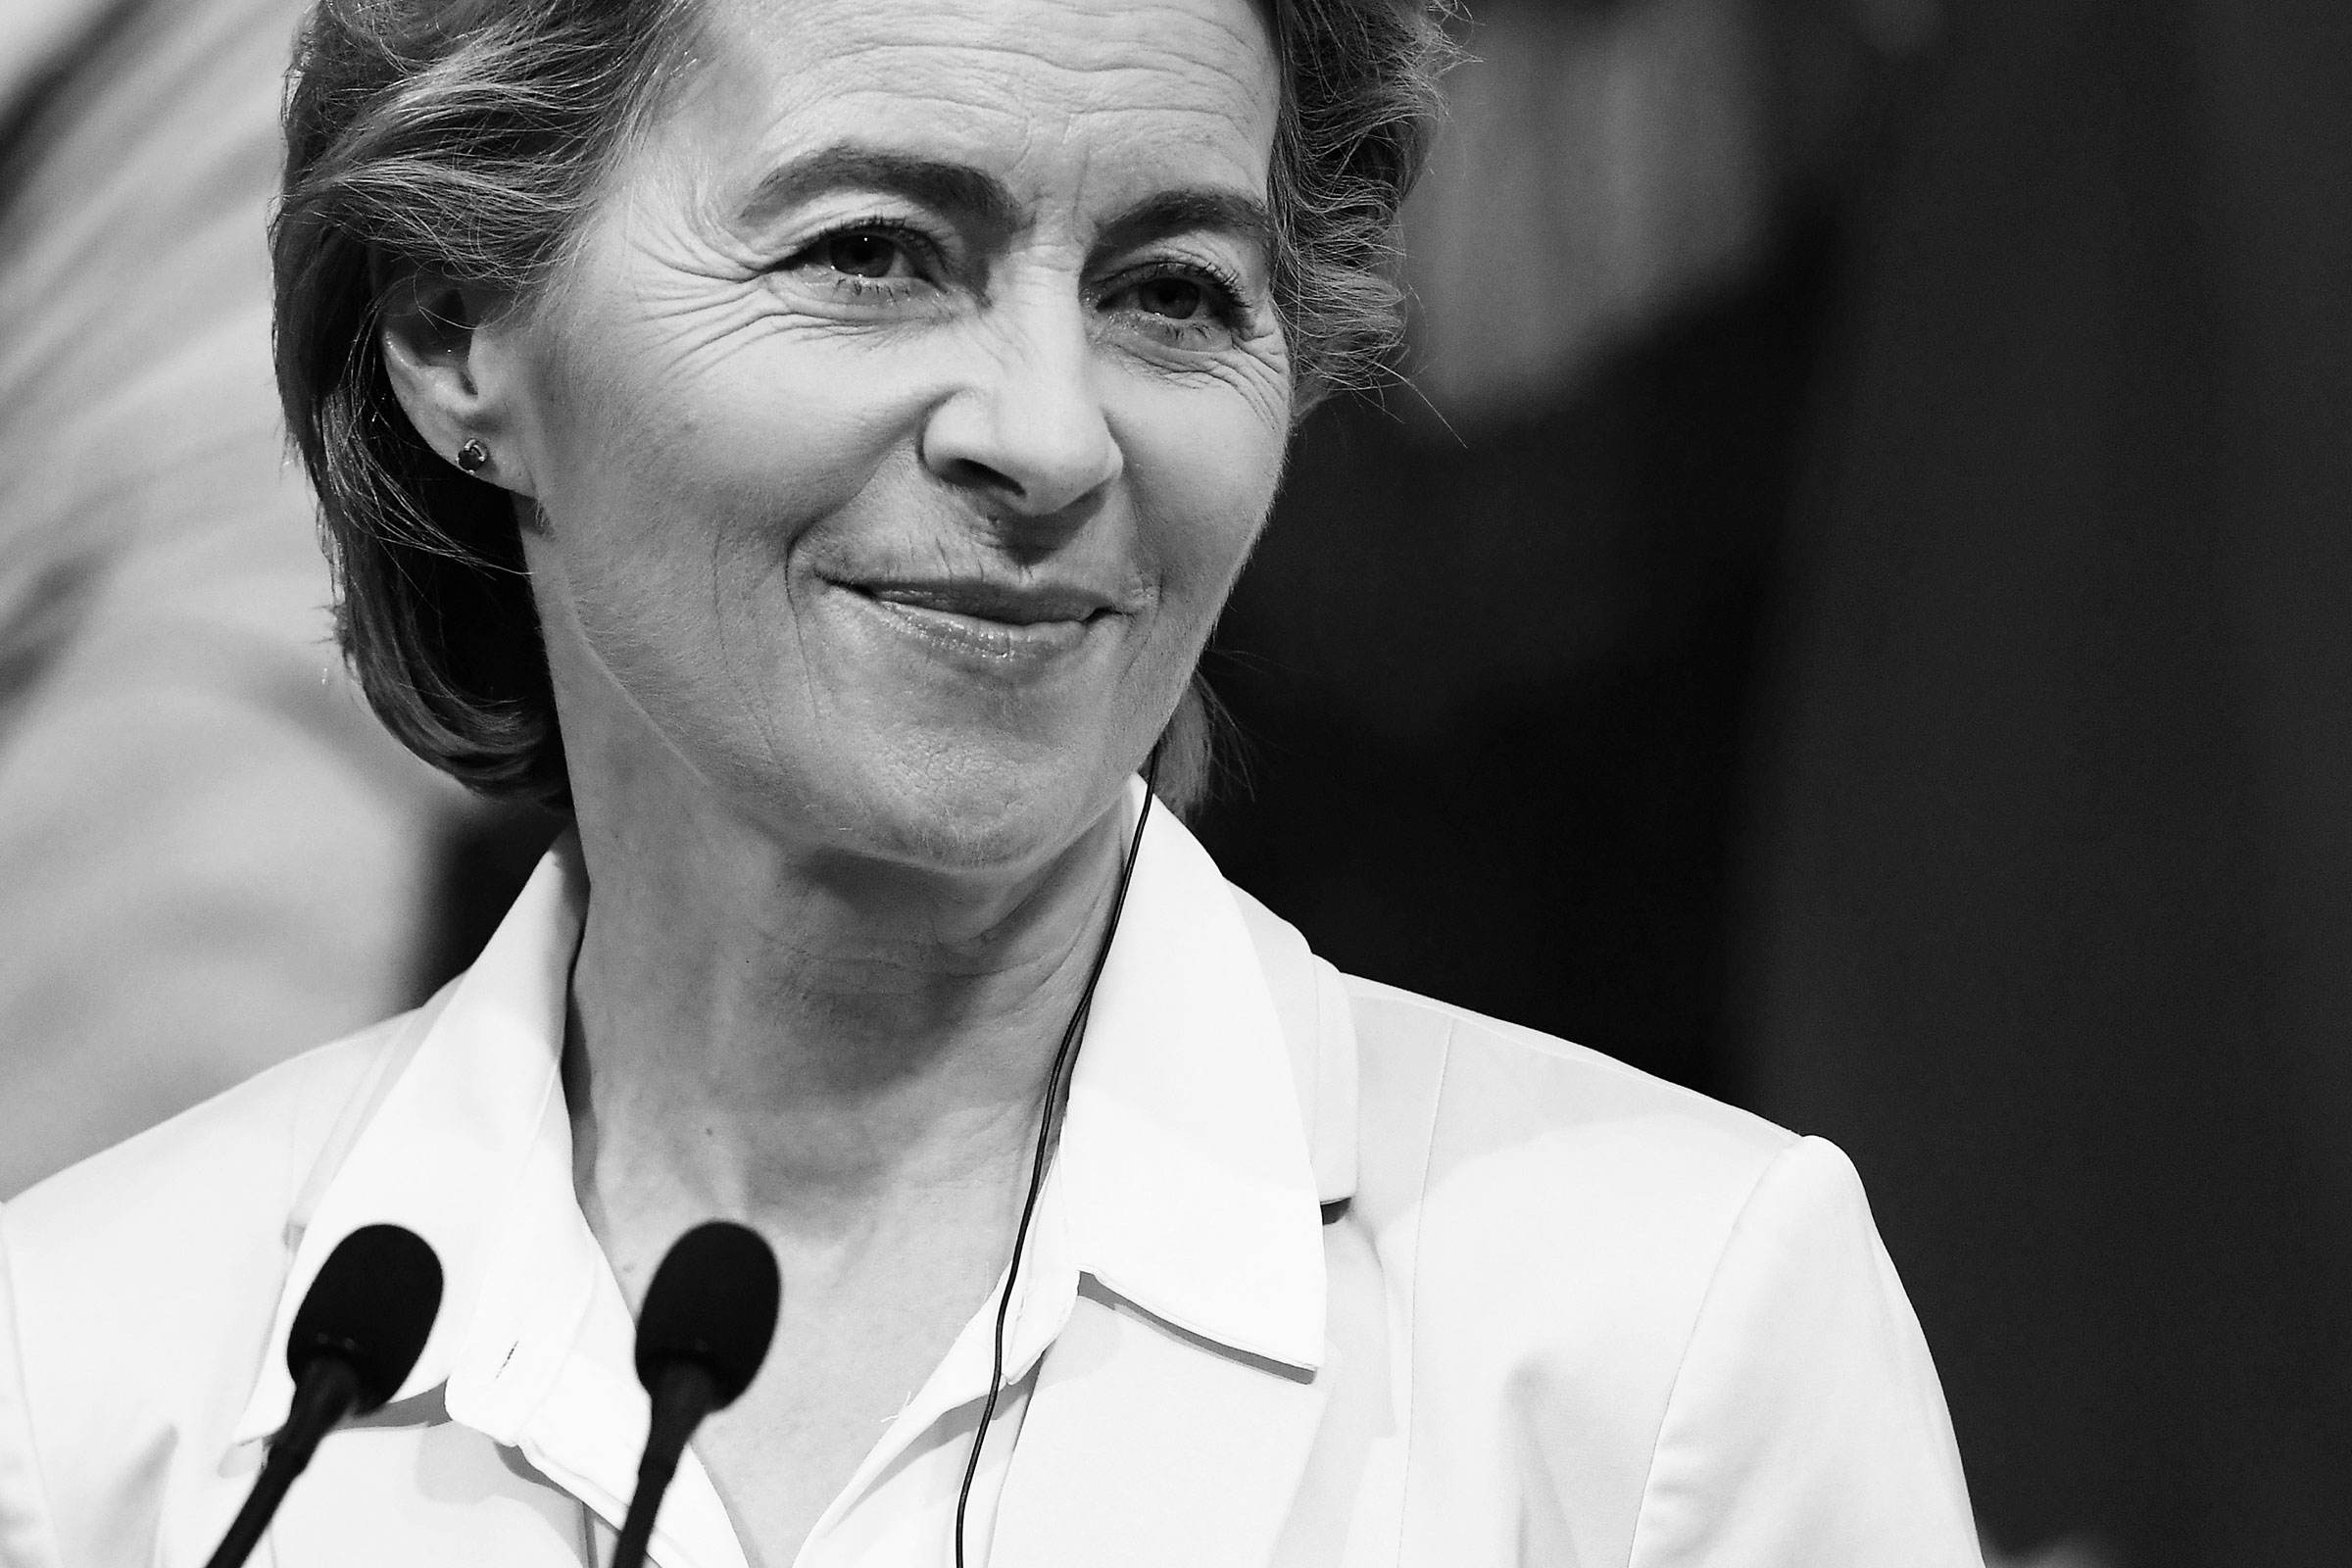 TIME 100 Leaders: Ursula von der Leyen